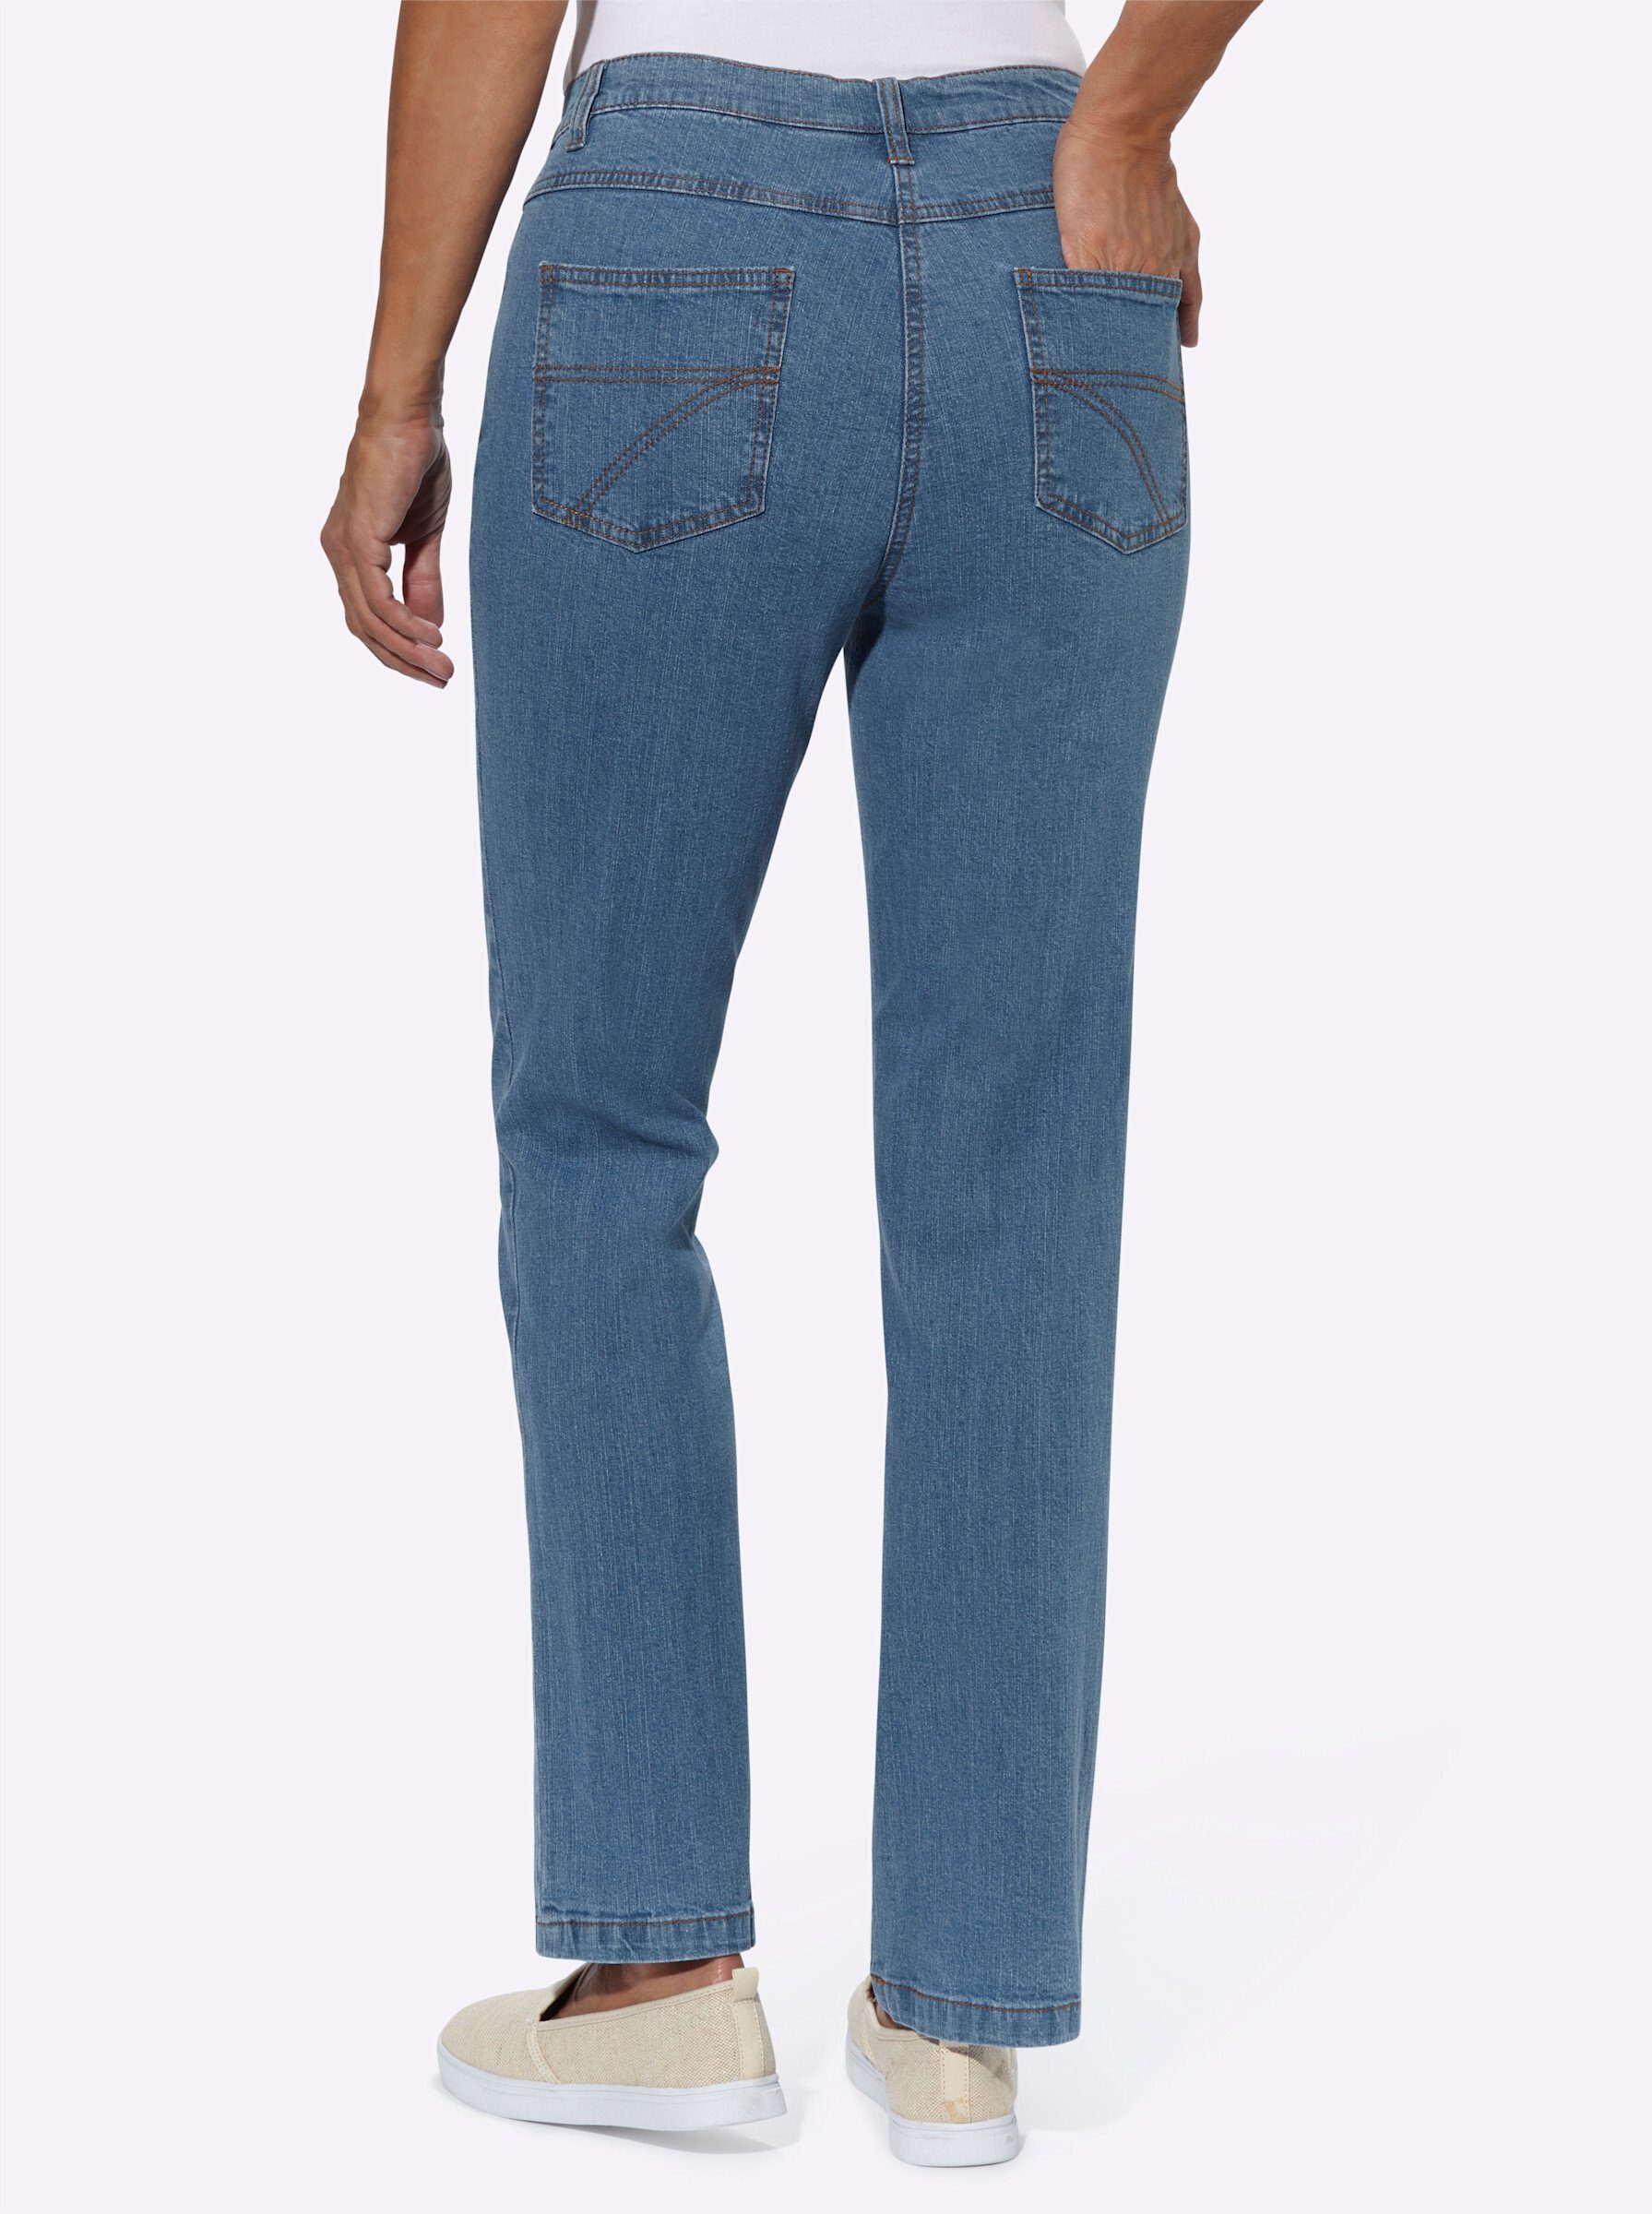 blue-bleached WEIDEN Jeans WITT Bequeme